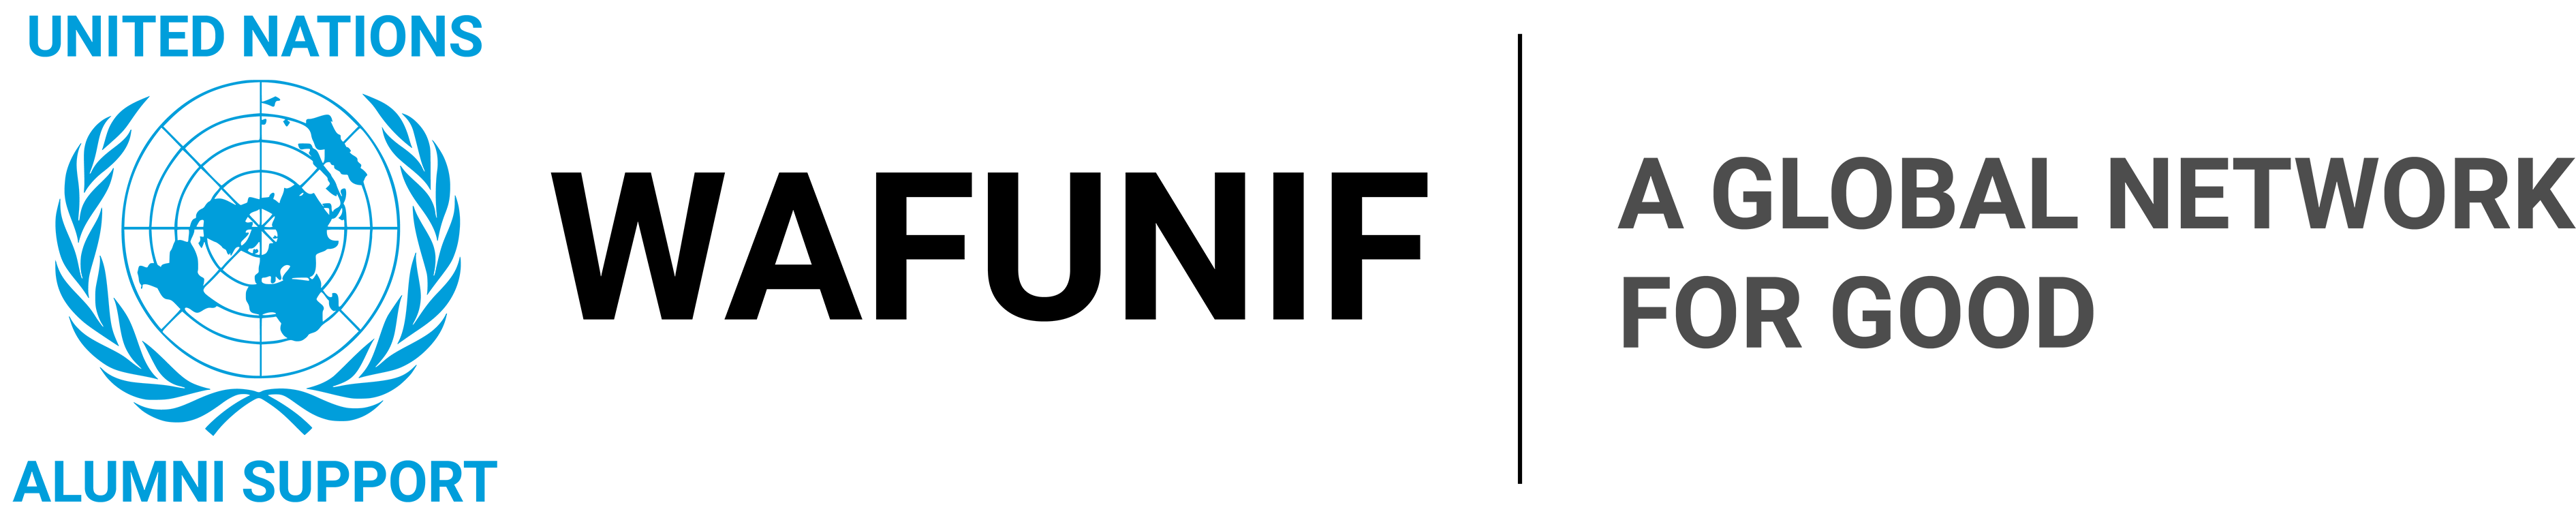 WAFUNIF logo